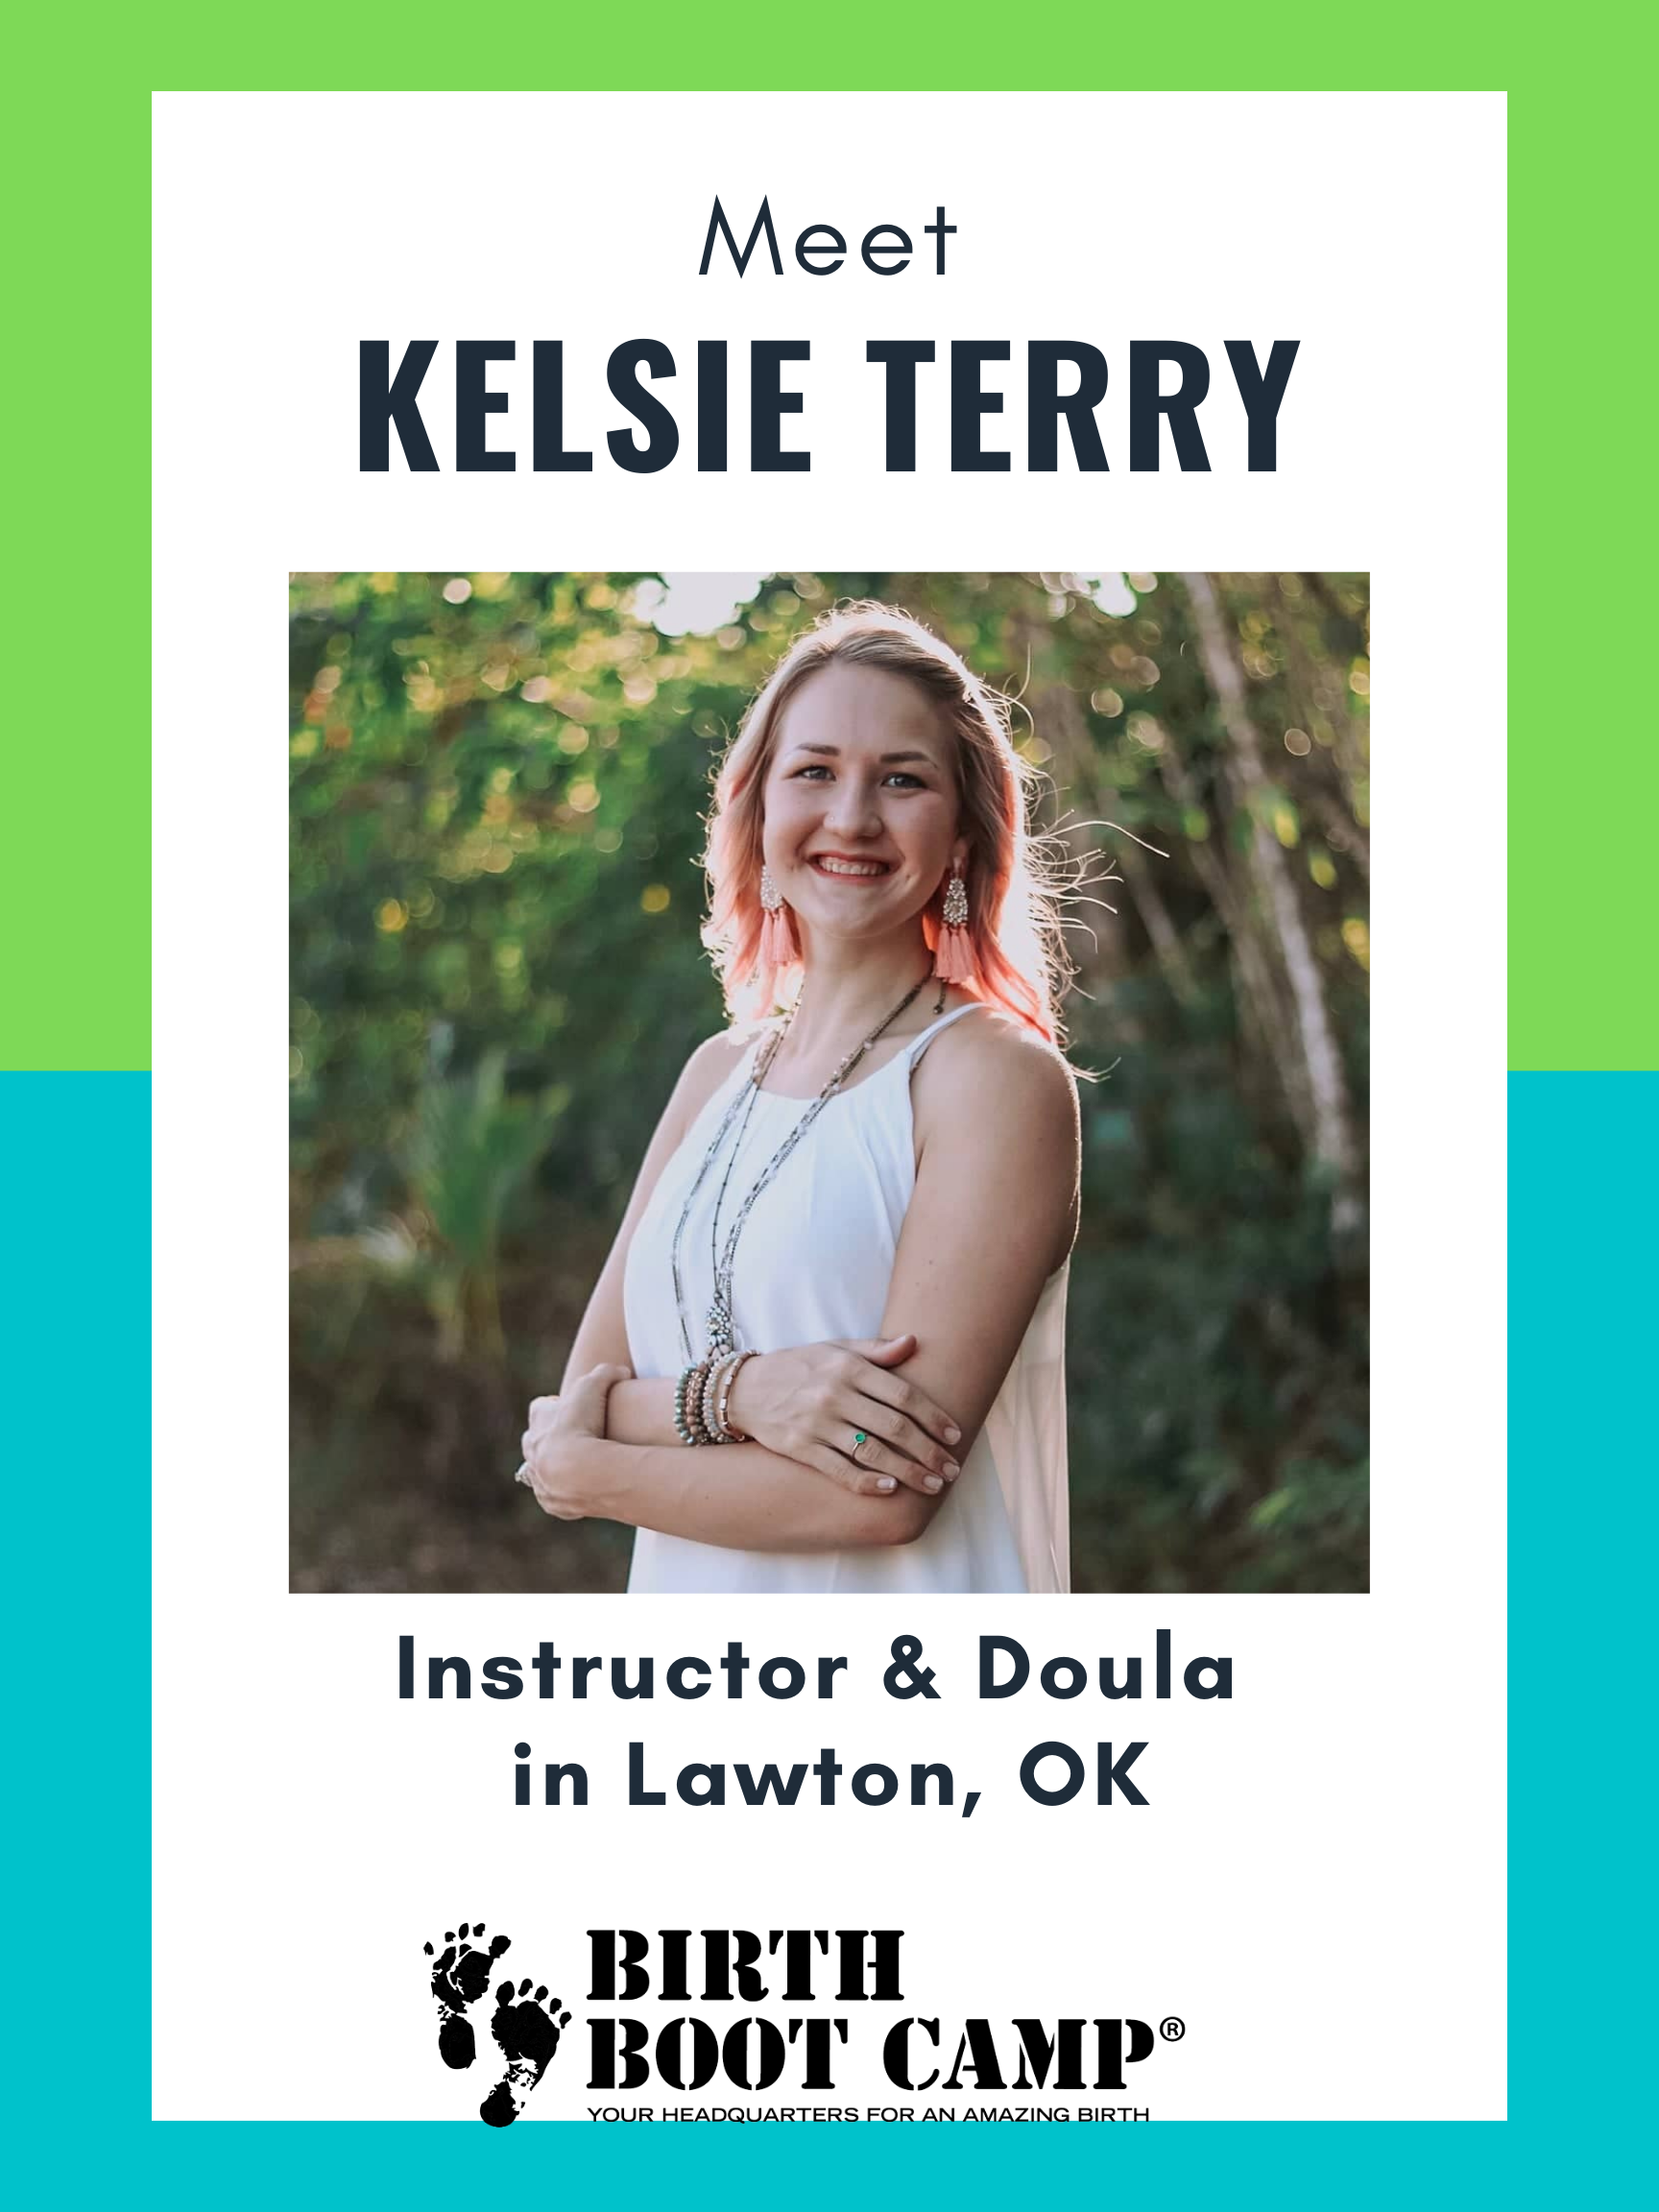 Meet Kelsie Terry – Instructor & Doula in Lawton, OK